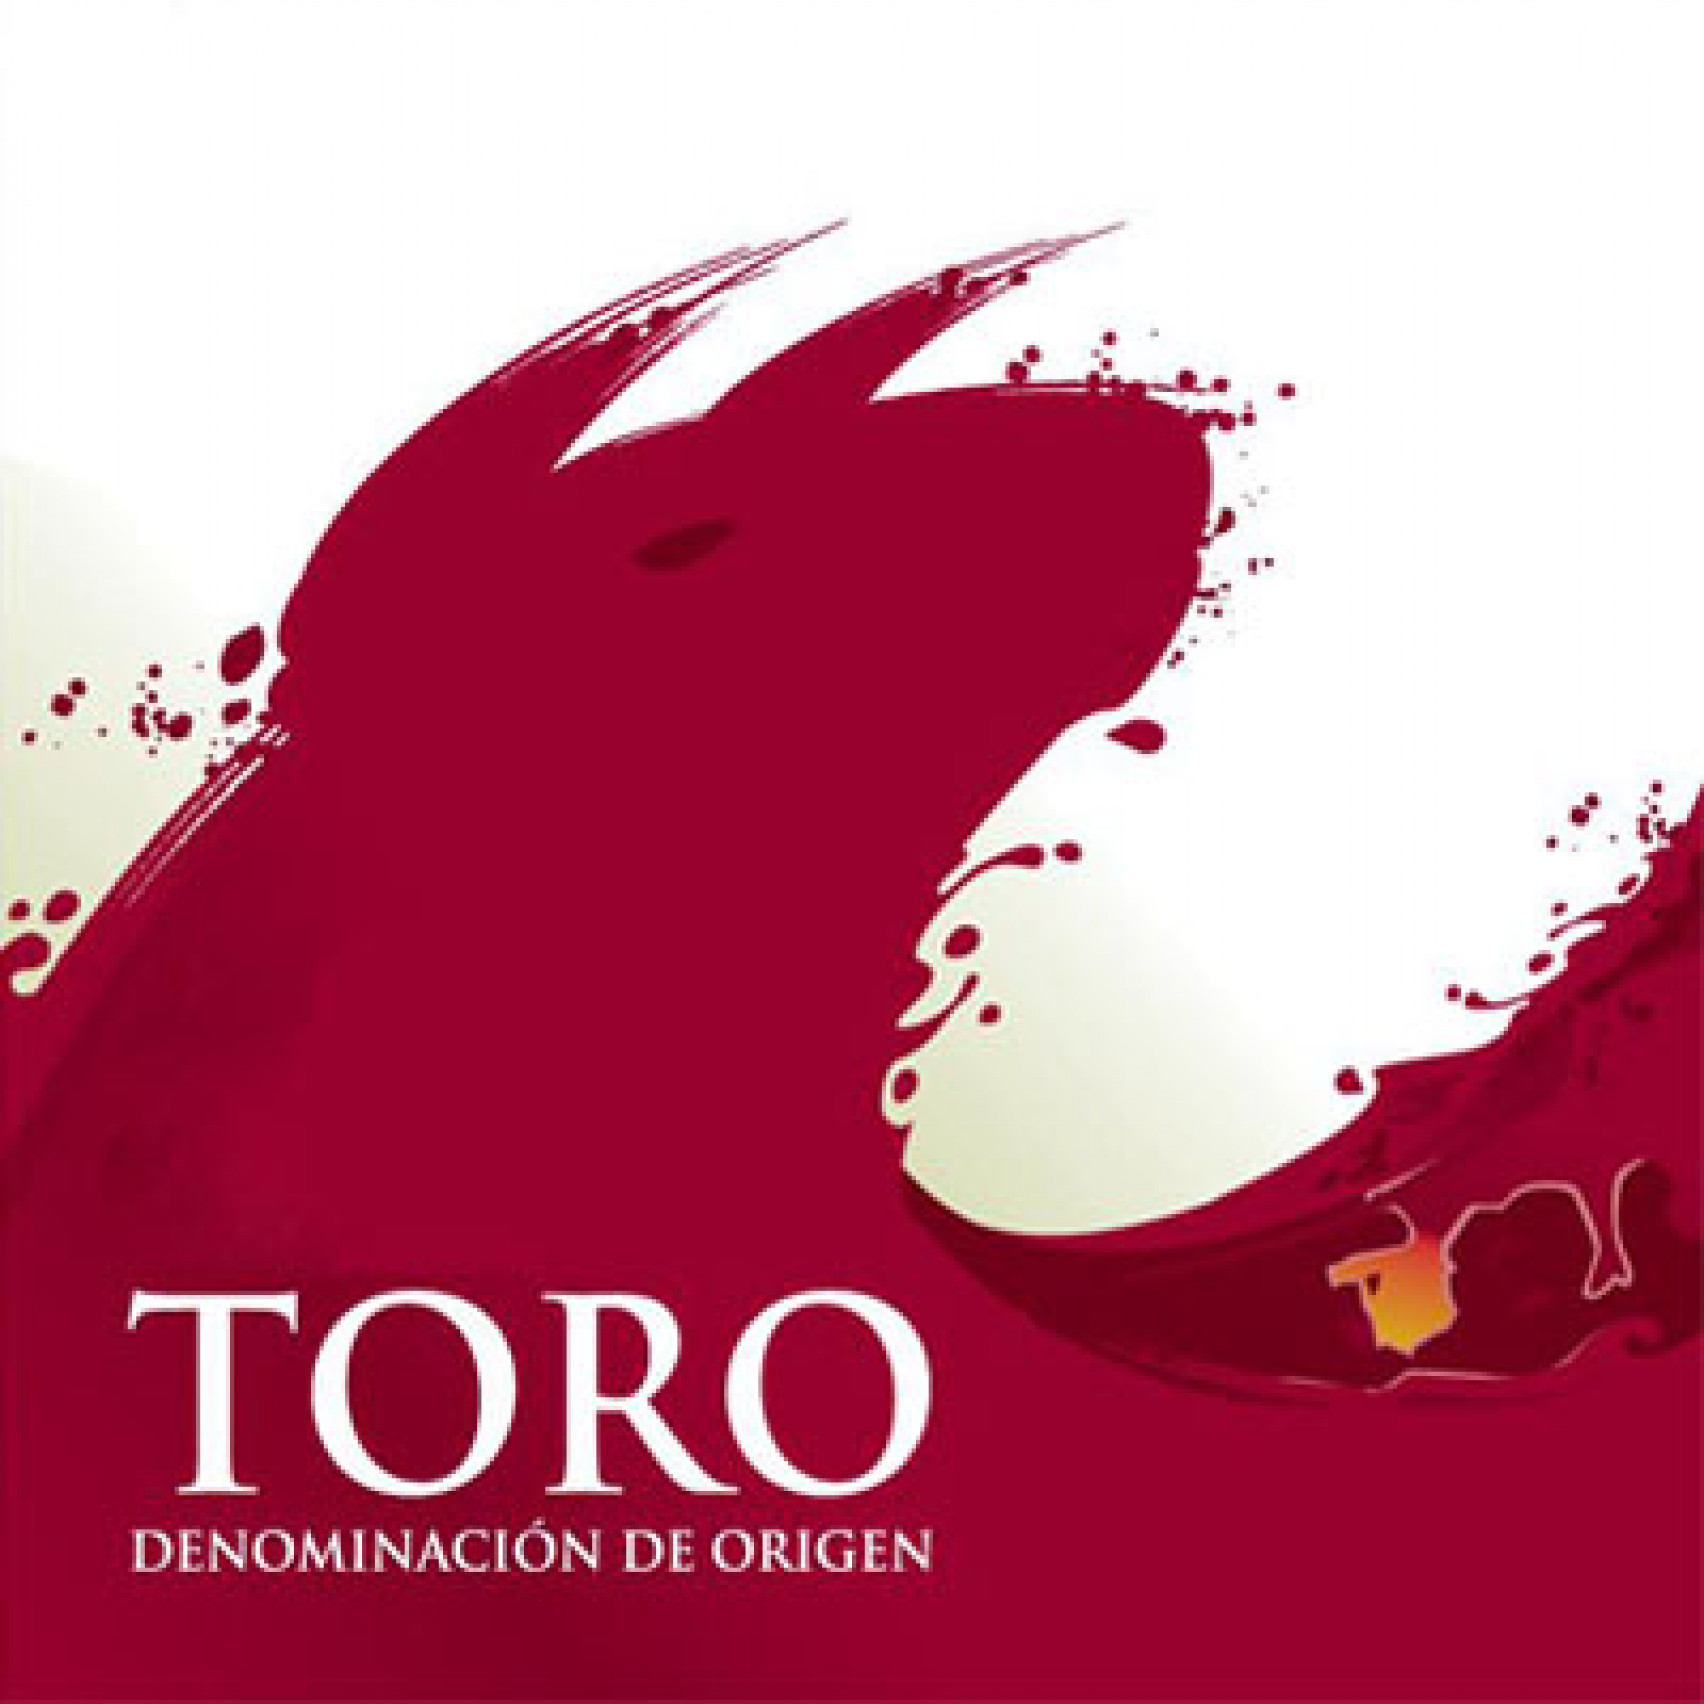 Els vins de la DO Toro